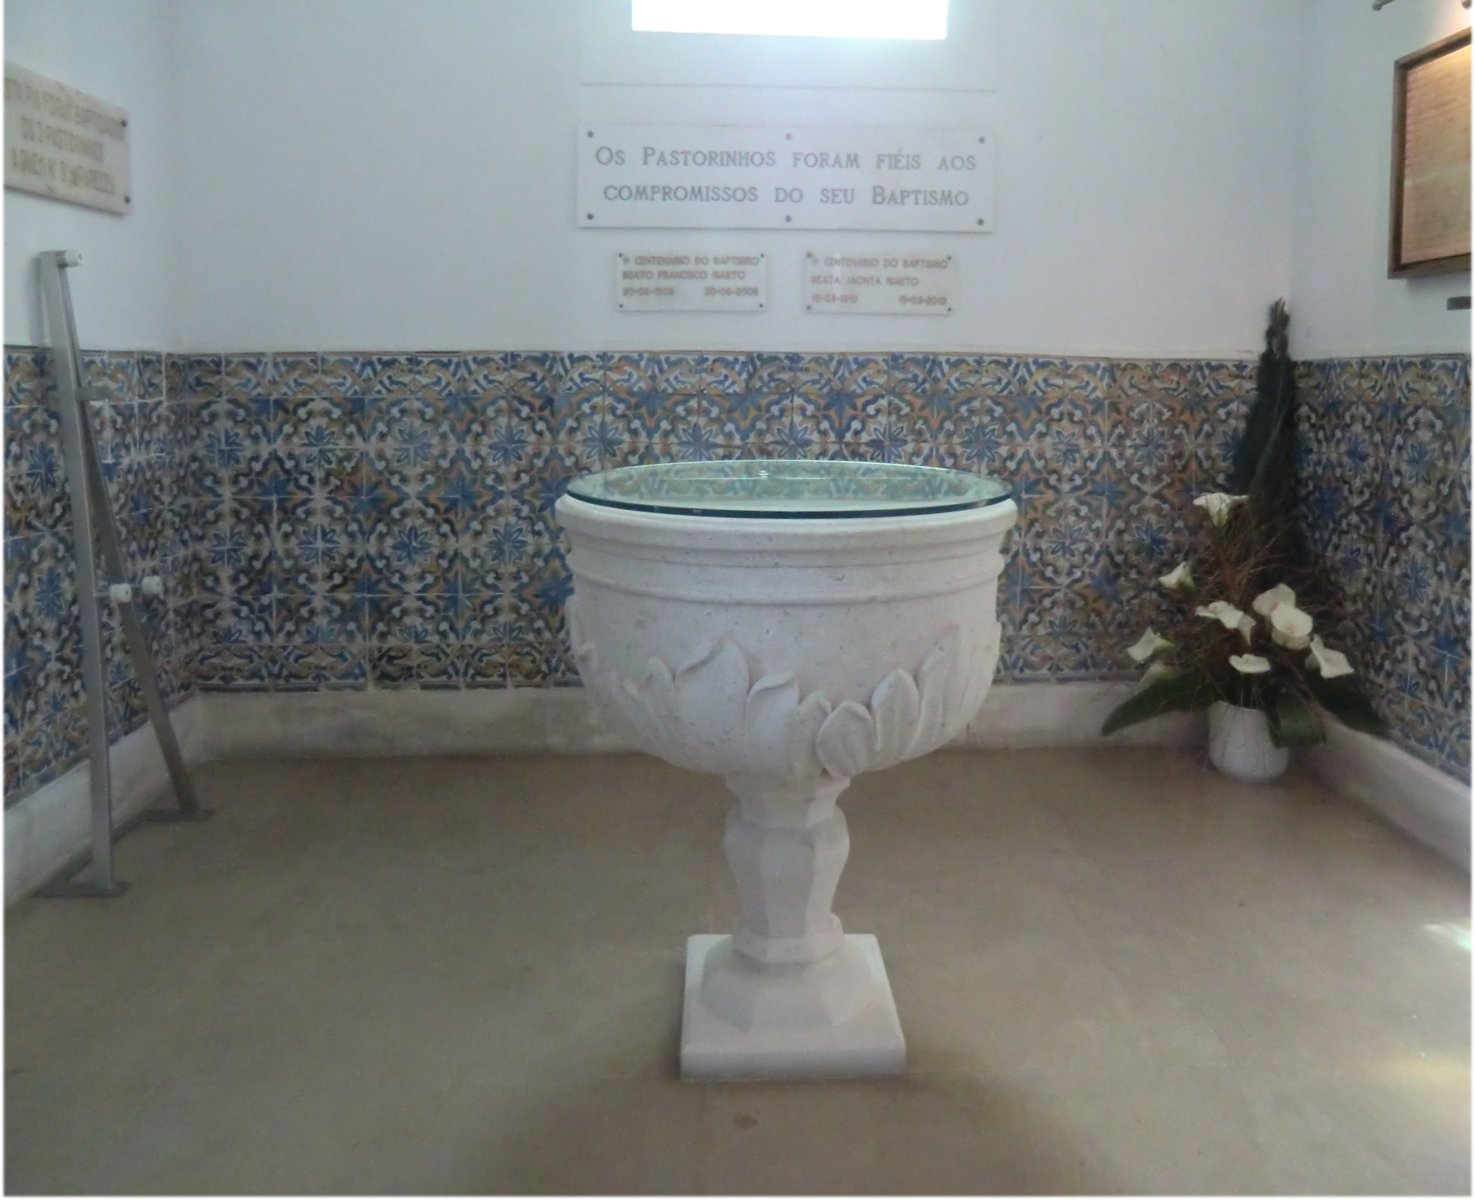 Taufstein in der Pfarrkirche in Aljustrel, an dem Franziskus und Jacinta getauft wurden